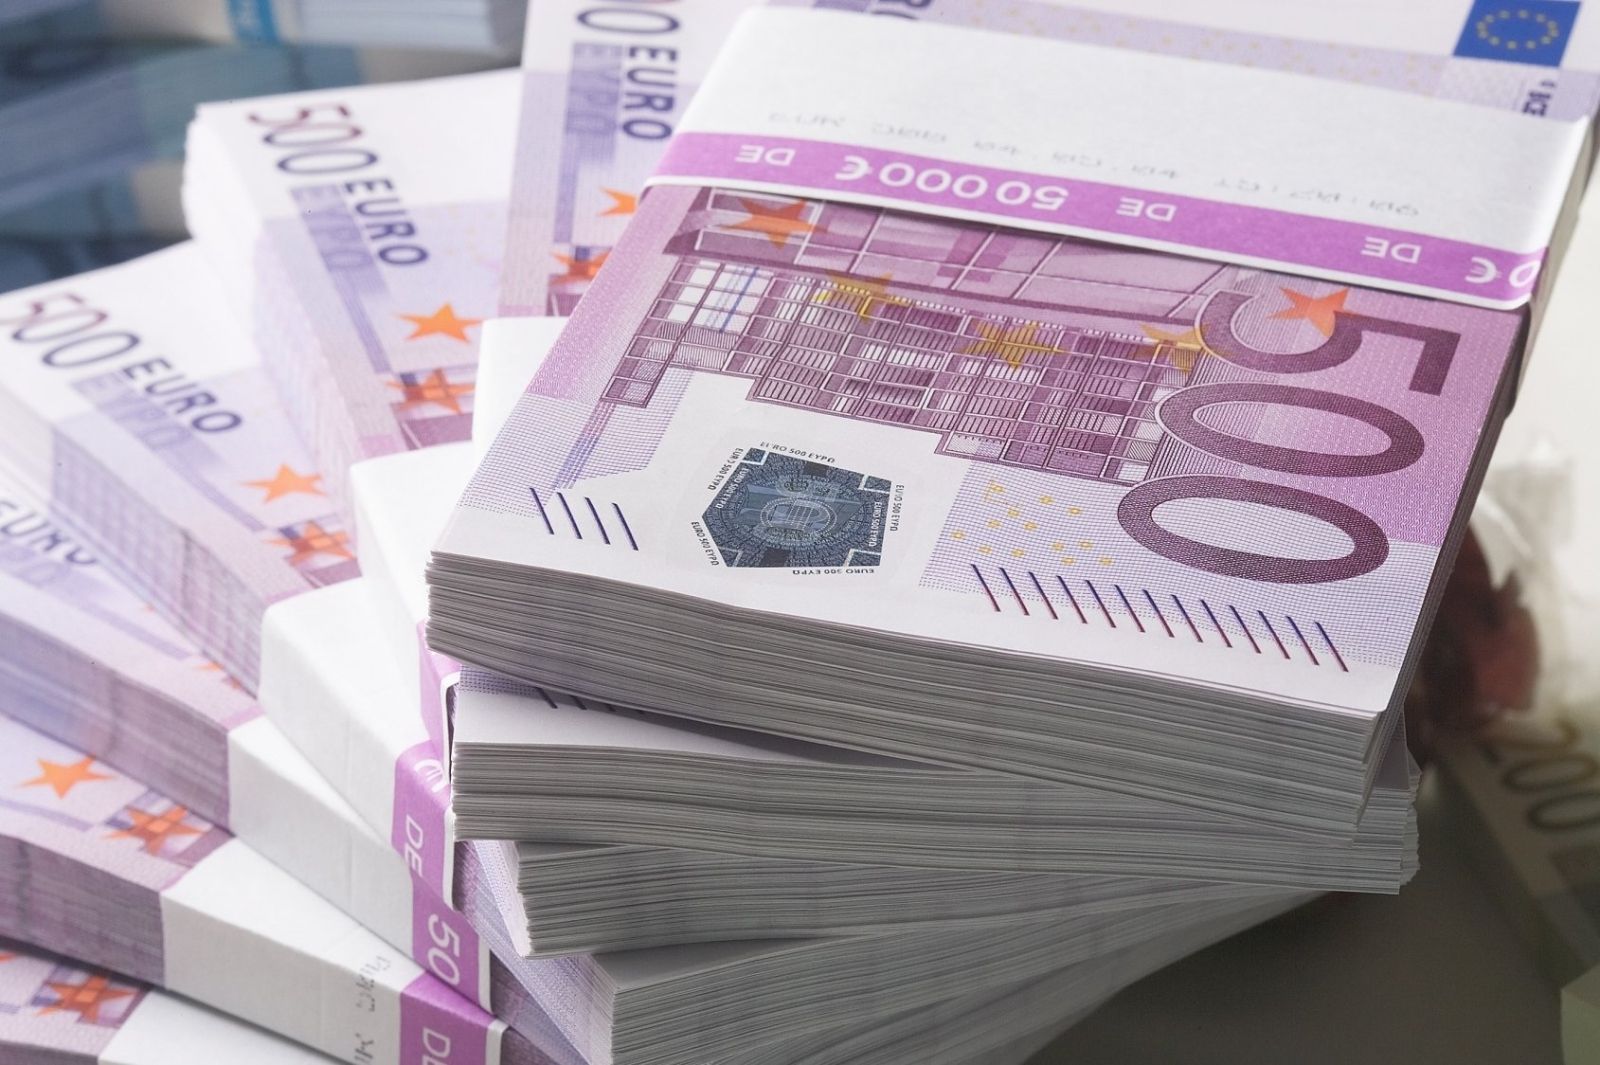 Μεγάλος νικητής του Λαϊκού Λαχείου κέρδισε 1.467.300 ευρώ -Πώς άφησε δύο φορές άφωνη τη γυναίκα του